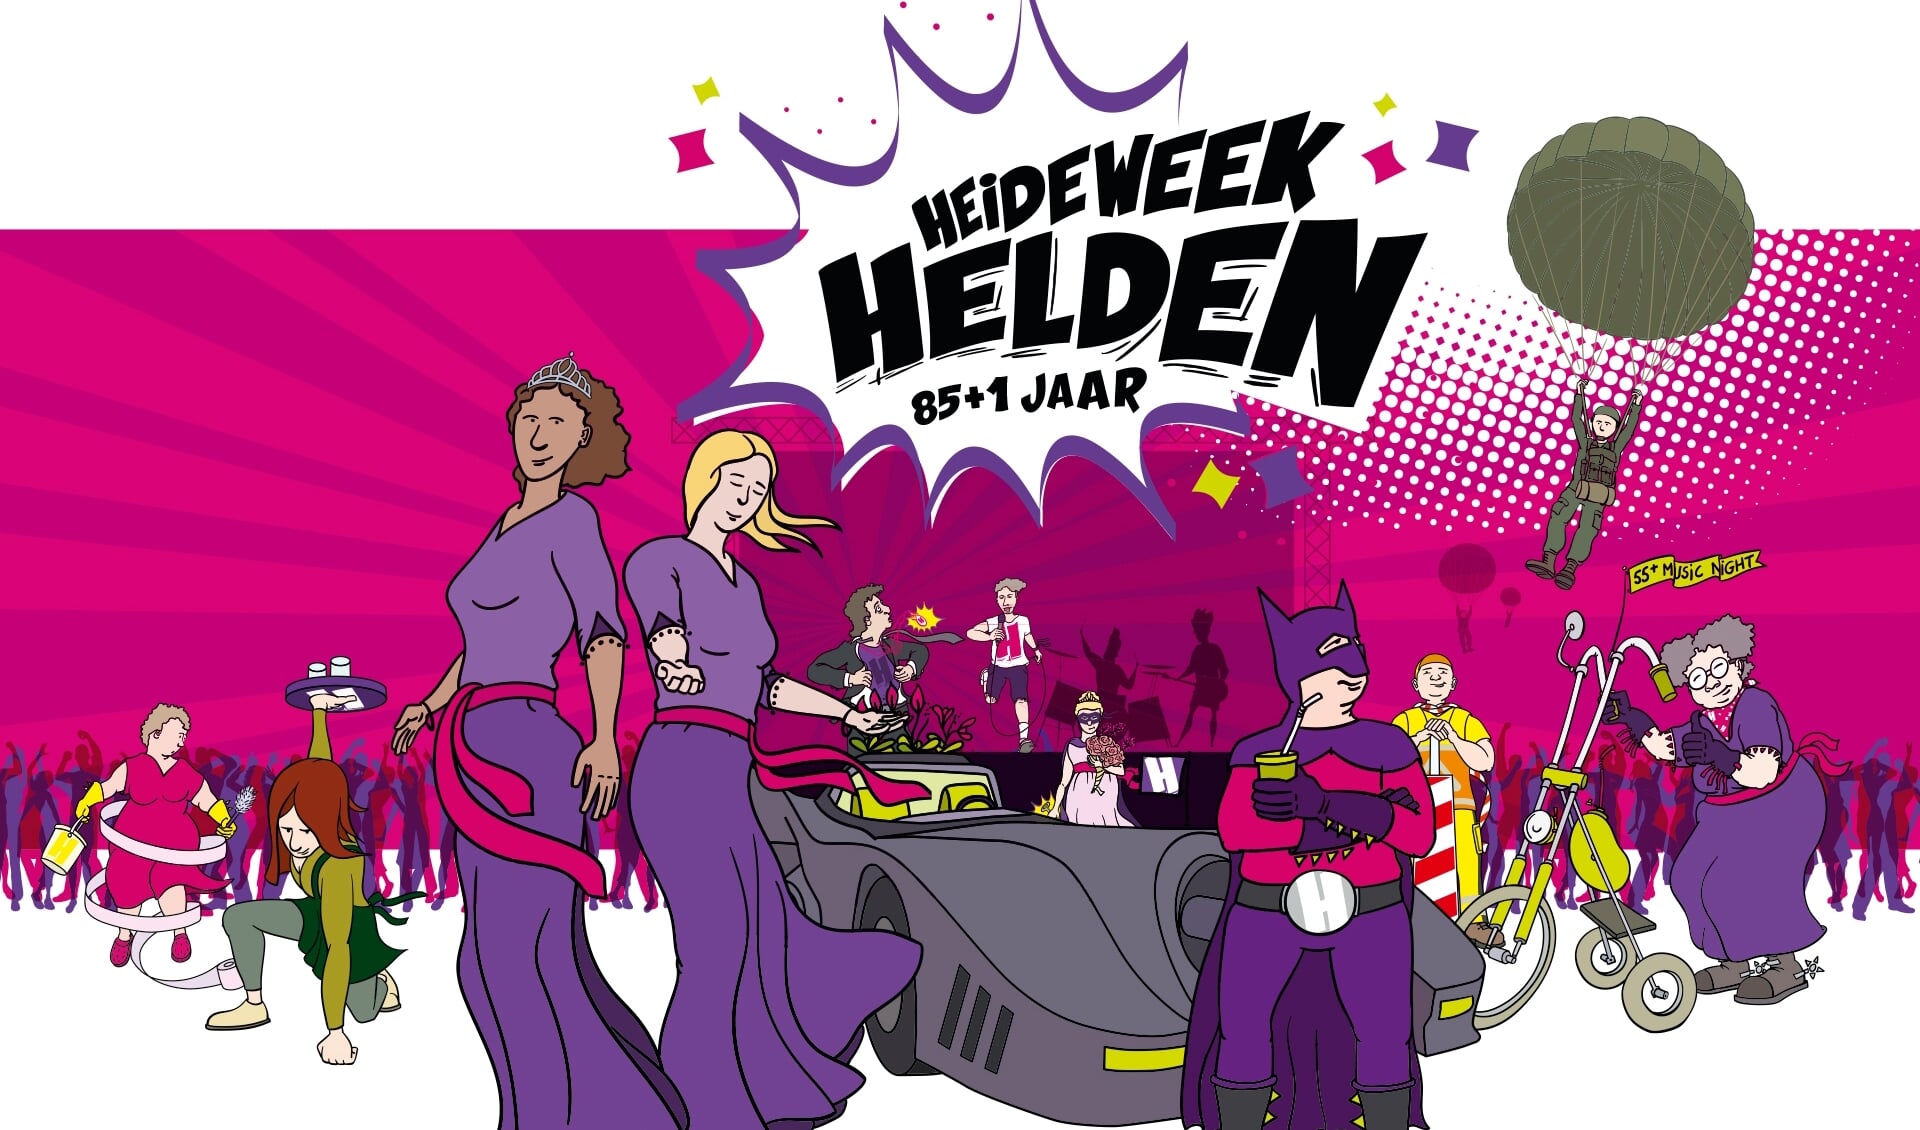 Helden, het thema van de Heideweek 2021.